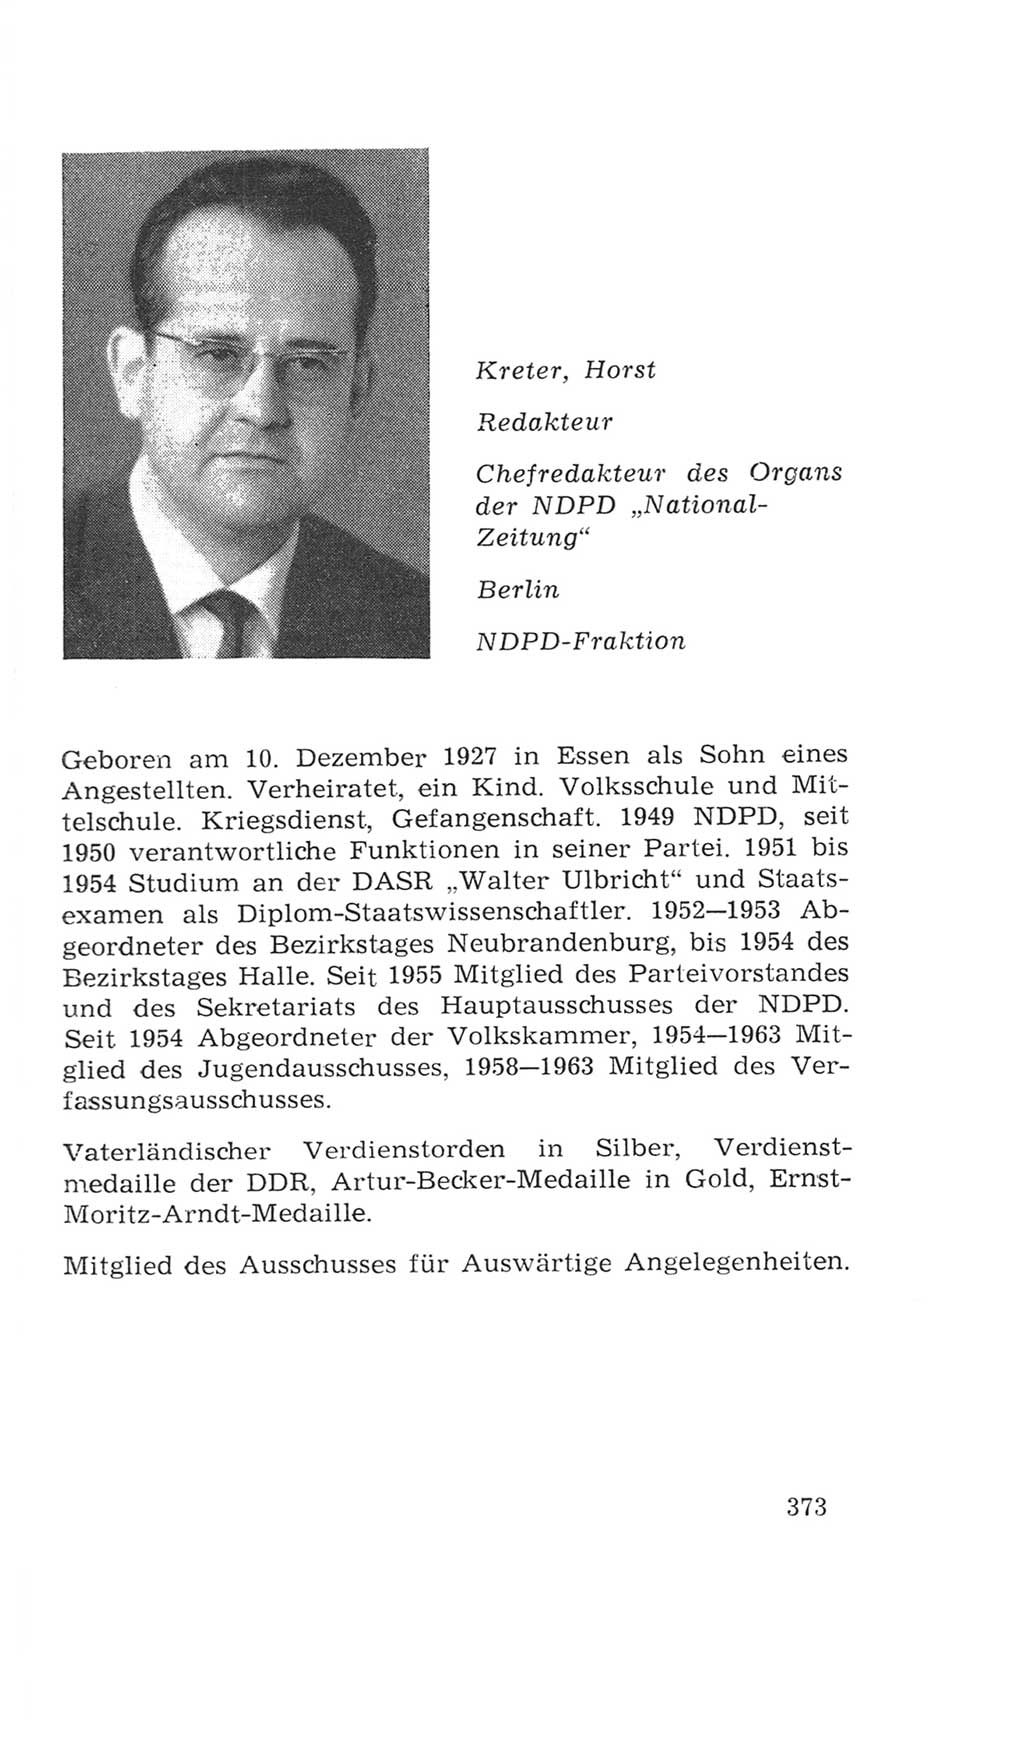 Volkskammer (VK) der Deutschen Demokratischen Republik (DDR), 4. Wahlperiode 1963-1967, Seite 373 (VK. DDR 4. WP. 1963-1967, S. 373)